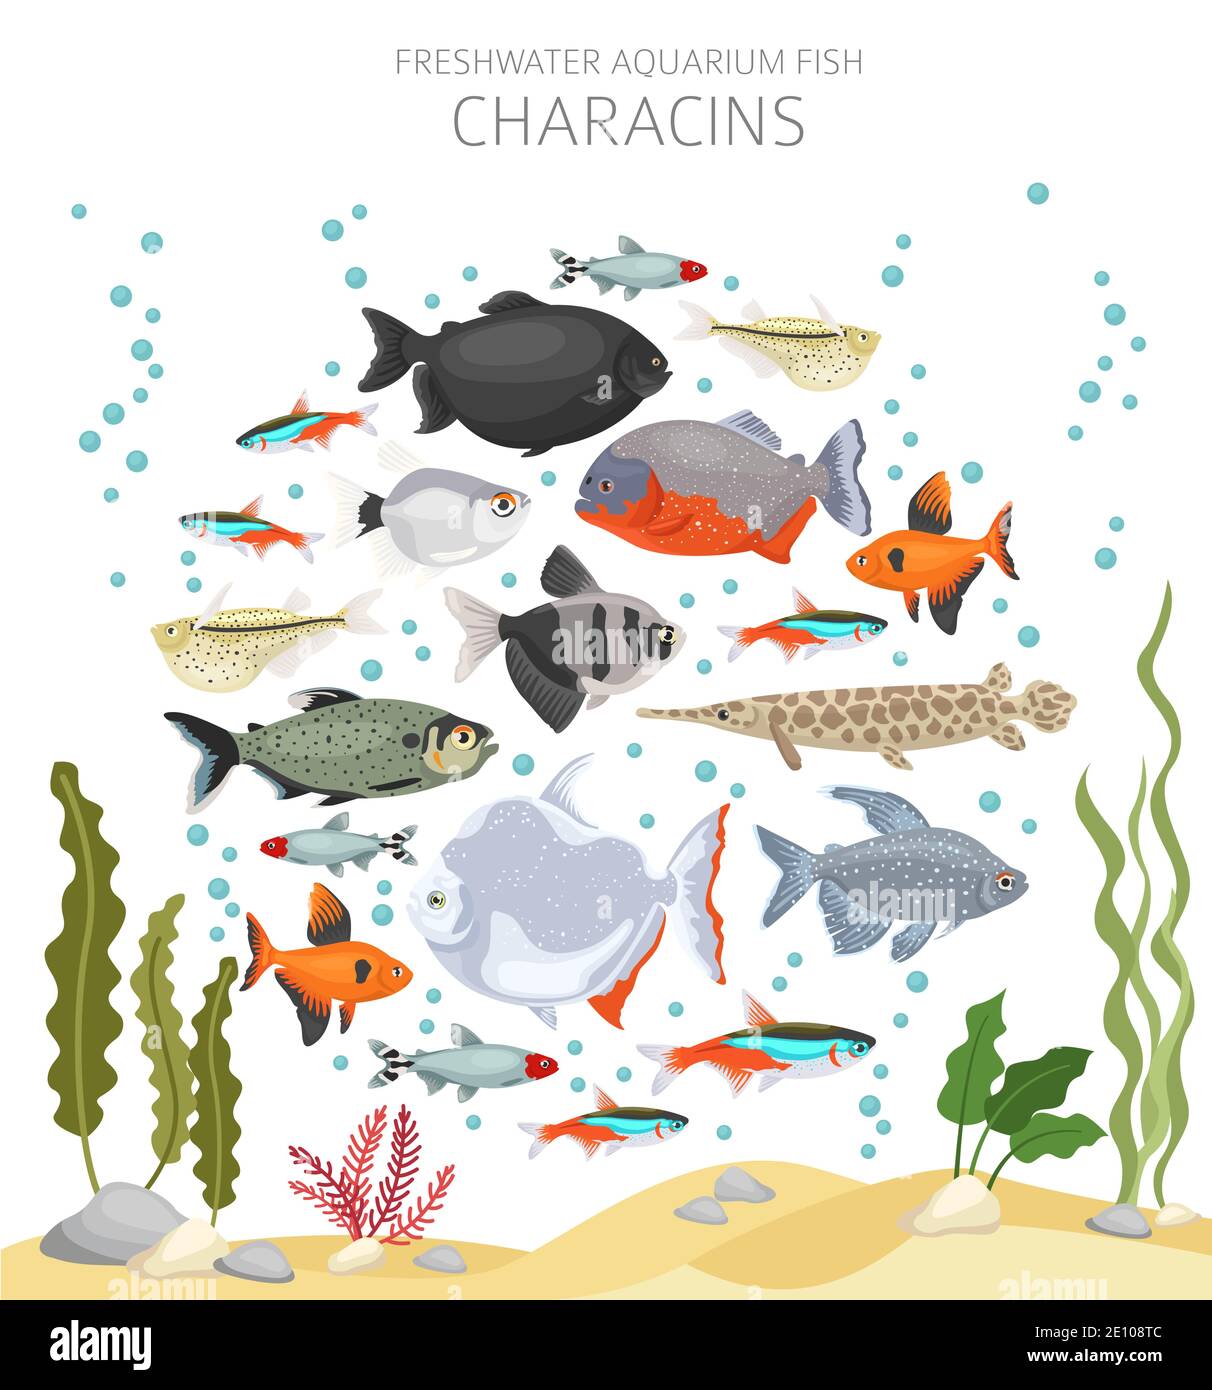 Salmler Fisch. Süßwasseraquarium Fisch Symbol Set flach Stil isoliert auf weiß. Vektorgrafik Stock Vektor